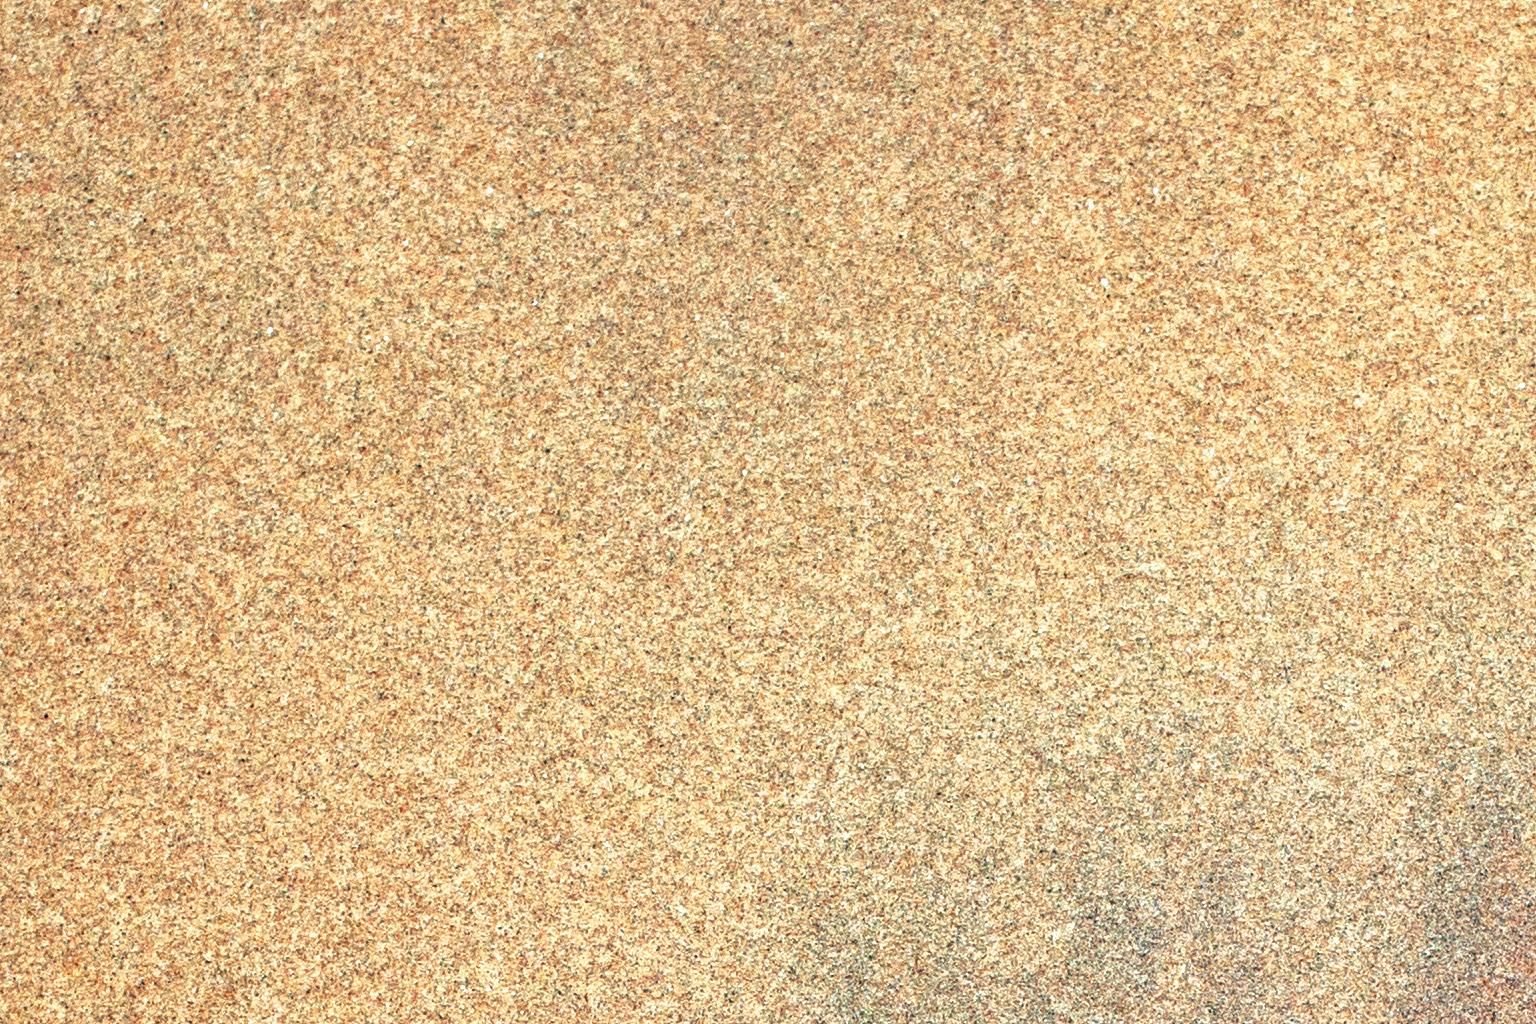 Sand No. 1 - Brown Color Photograph by Chris Thomaidis